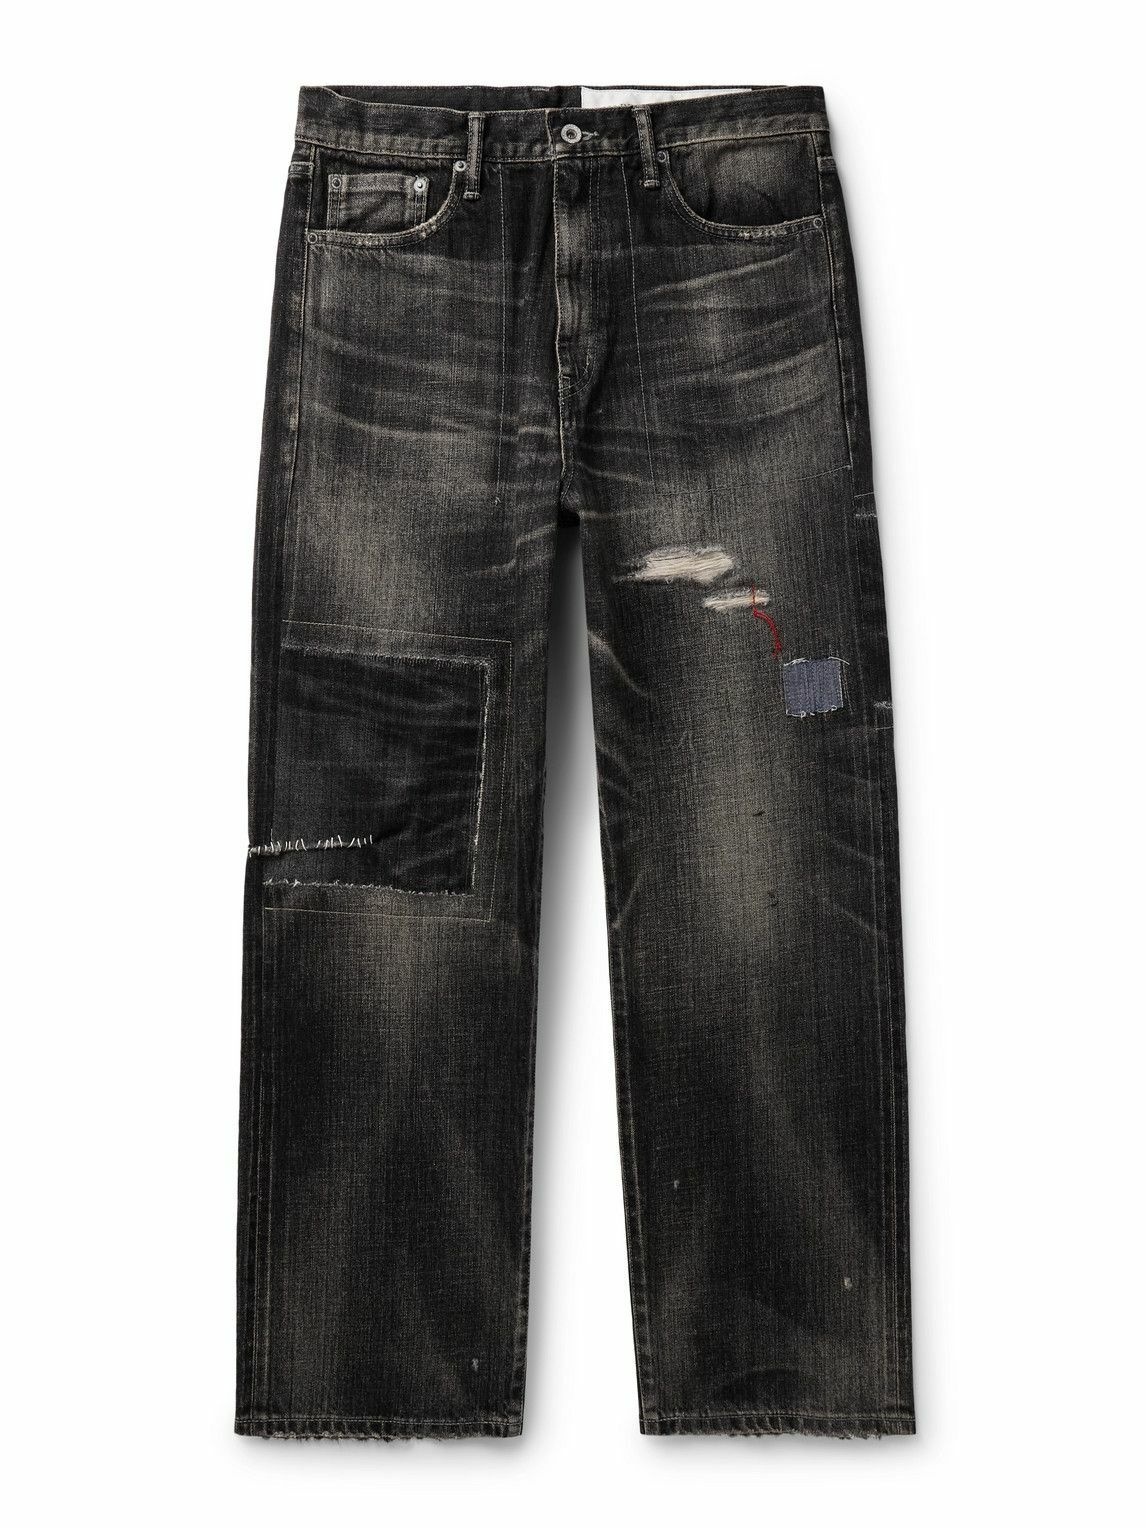 Mens Scratch Jeans Pants for Men Stylish Slim Fit Stretch Jeans Denim Men  Pant, Light Blue Colour, 30W Size -